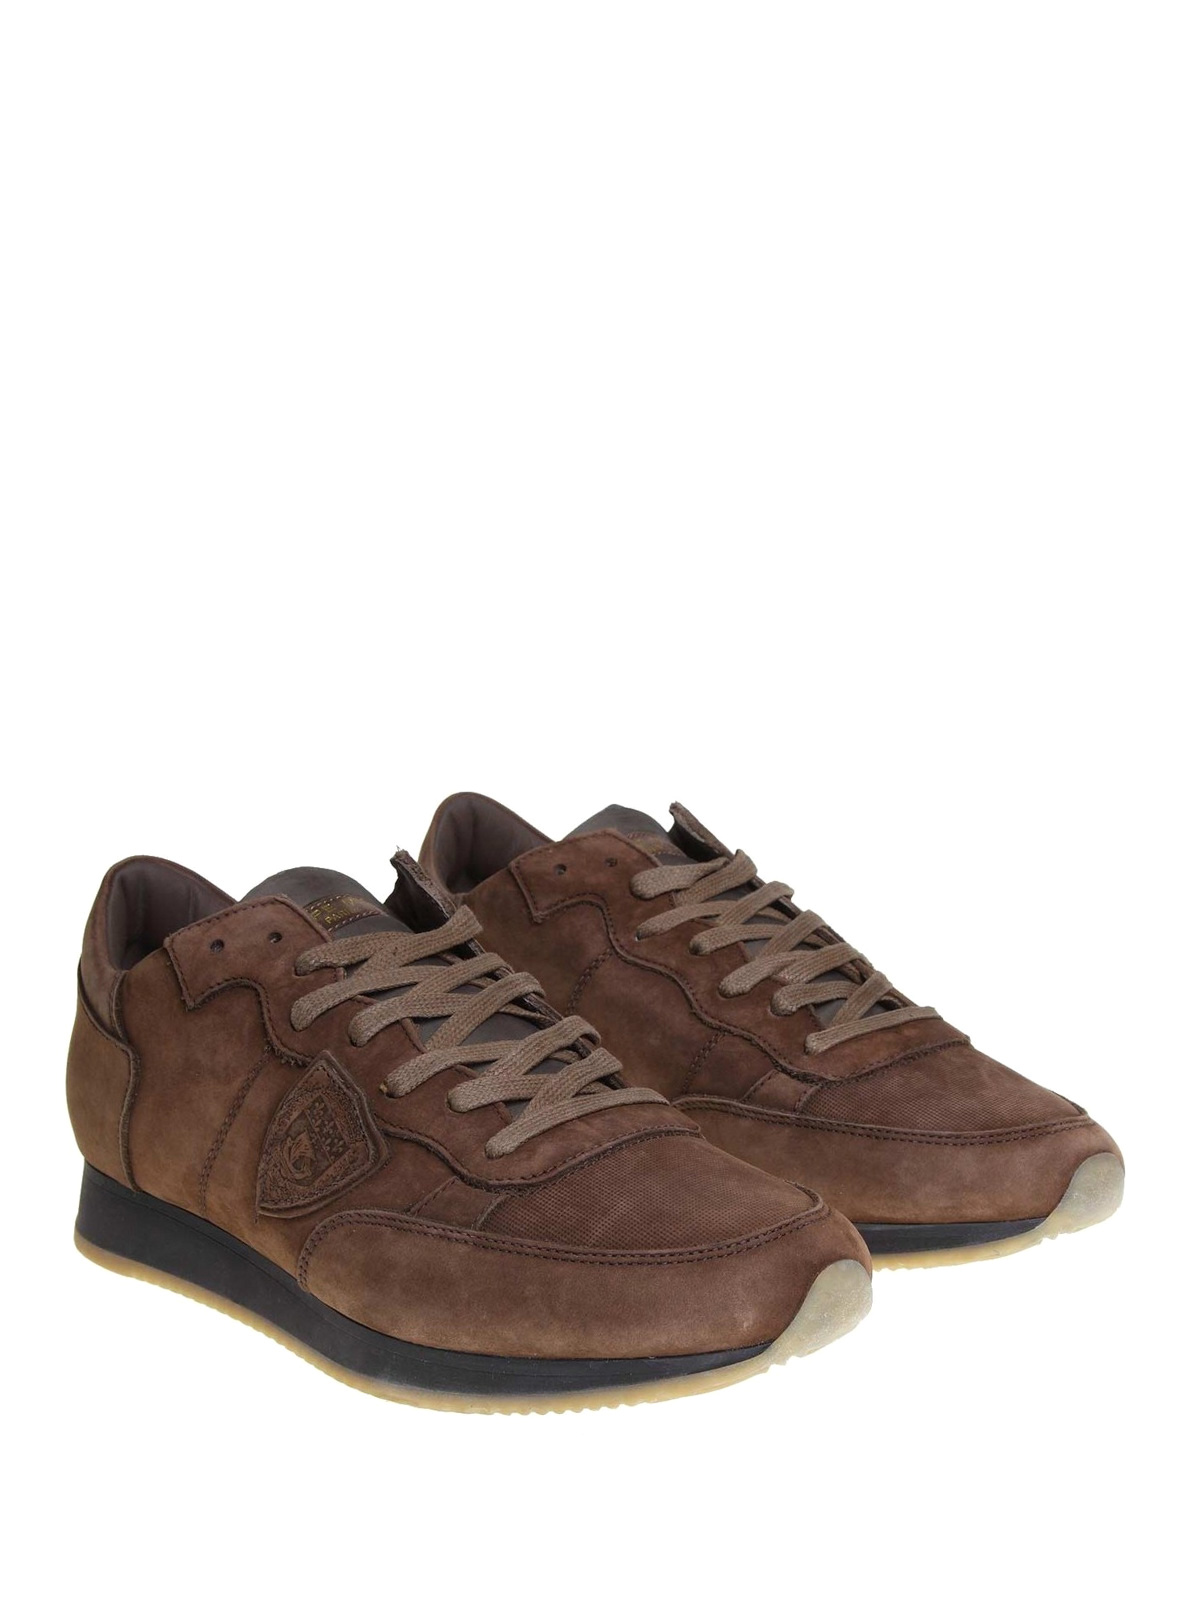 tussen Plateau mei Trainers Philippe Model - Tropez brown nubuck sneakers - TRLUNB08